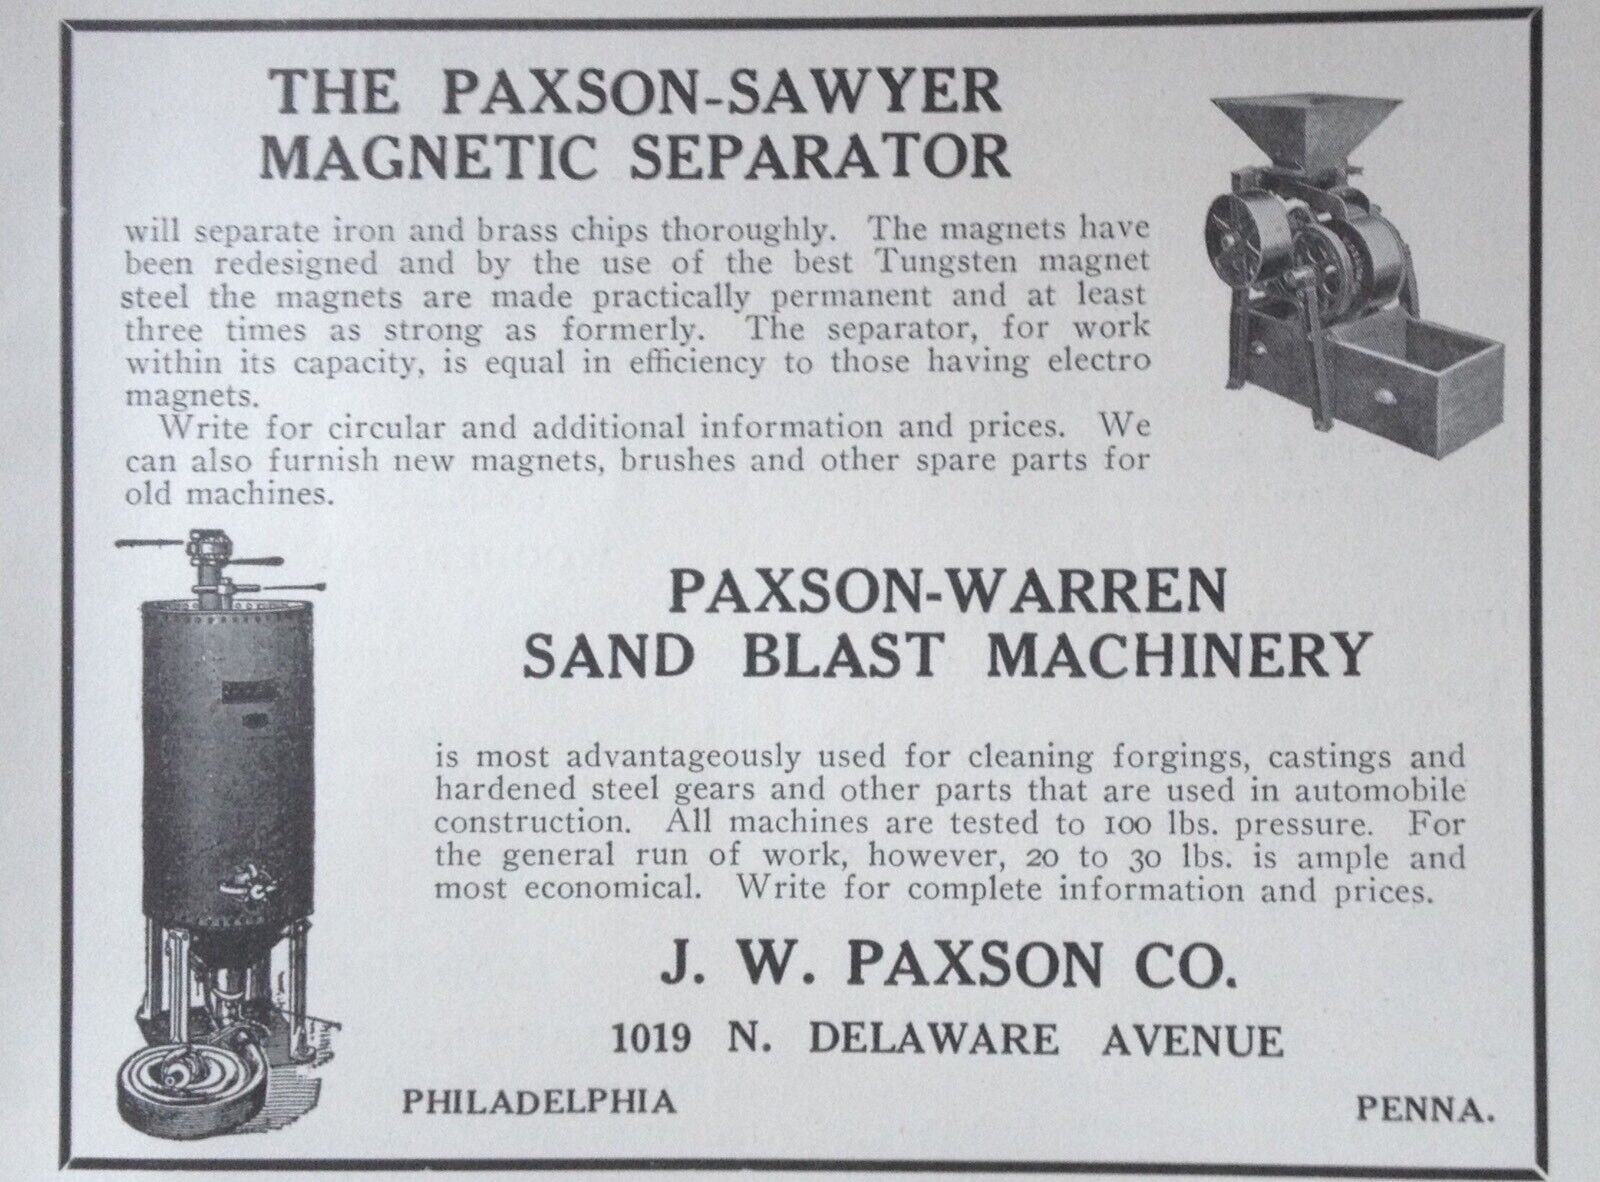 1914 AD(K23)~J.W. PAXSON CO. PHIL., PA. PAXSON-SAWYER MAGNETIC SEPARATOR